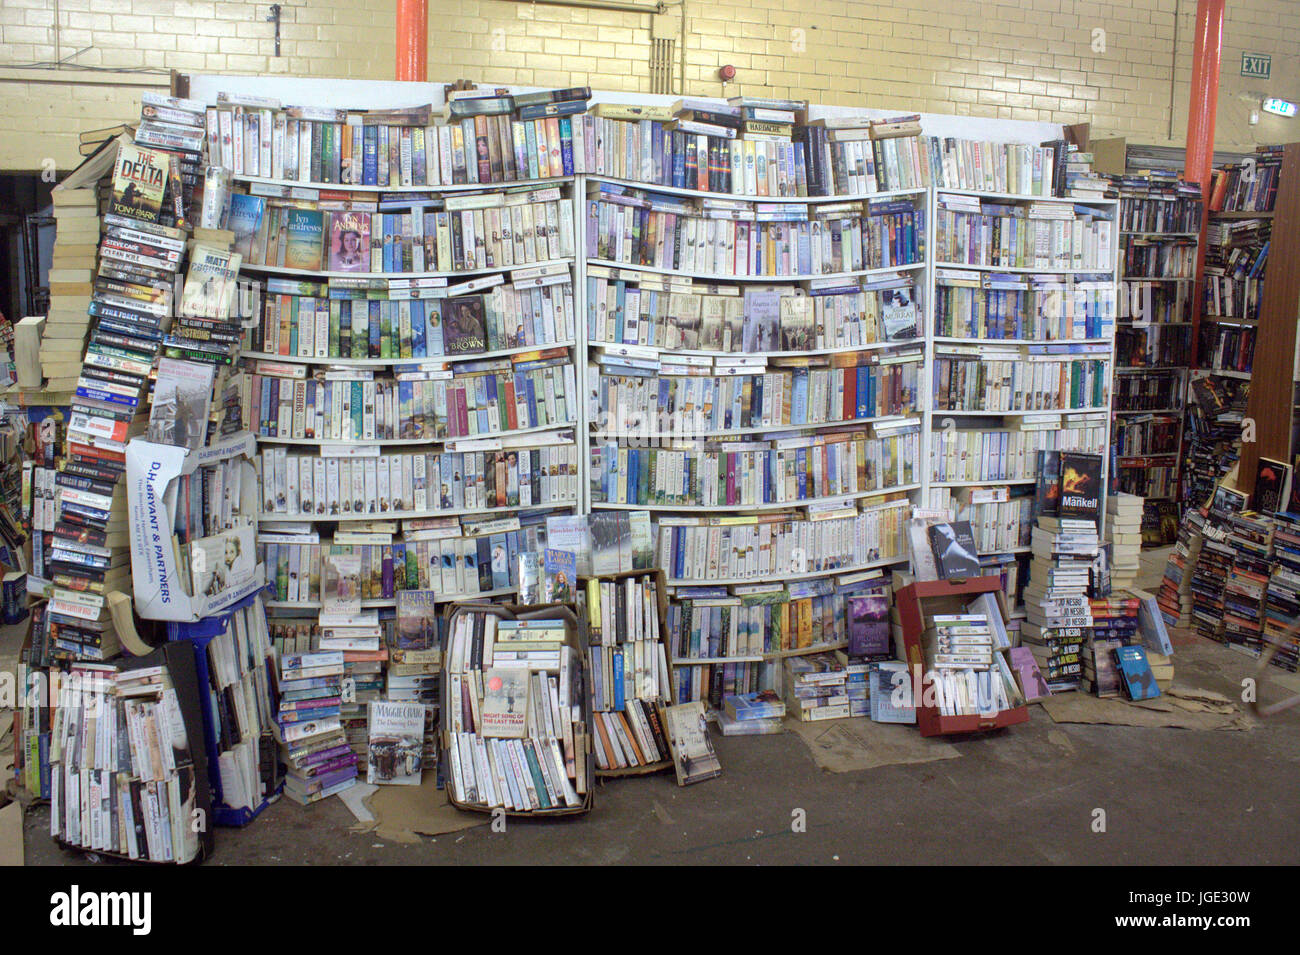 Bücherregale in Buch Shop Marktstand brechen unter Belastung verbiegen verdreht unter Gewicht überlastet Stockfoto